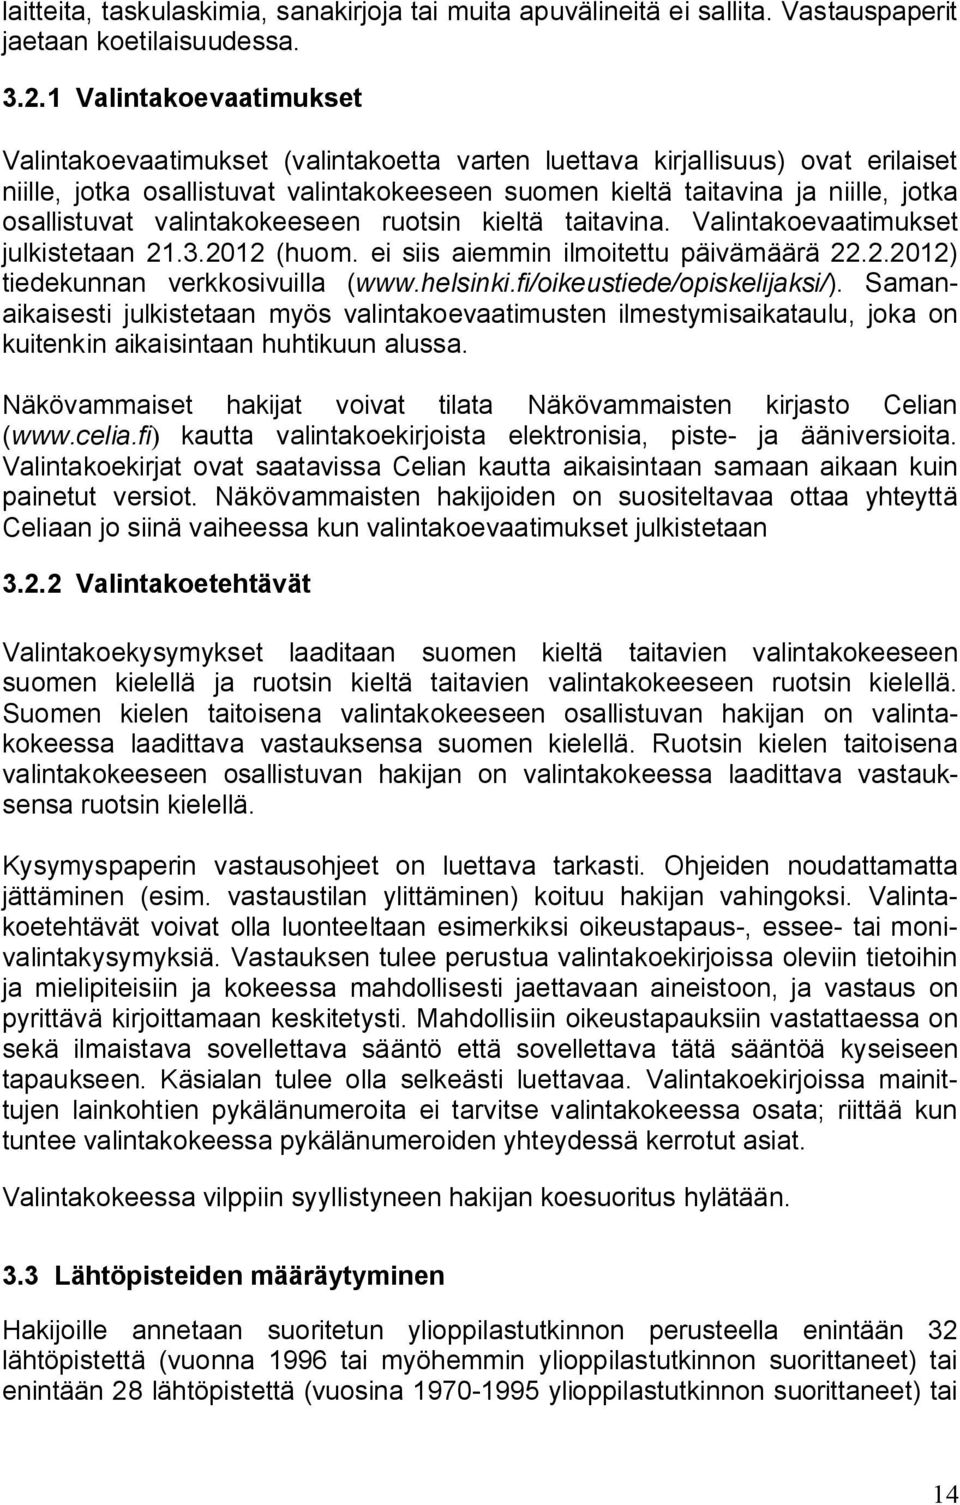 osallistuvat valintakokeeseen ruotsin kieltä taitavina. Valintakoevaatimukset julkistetaan 21.3.2012 (huom. ei siis aiemmin ilmoitettu päivämäärä 22.2.2012) tiedekunnan verkkosivuilla (www.helsinki.